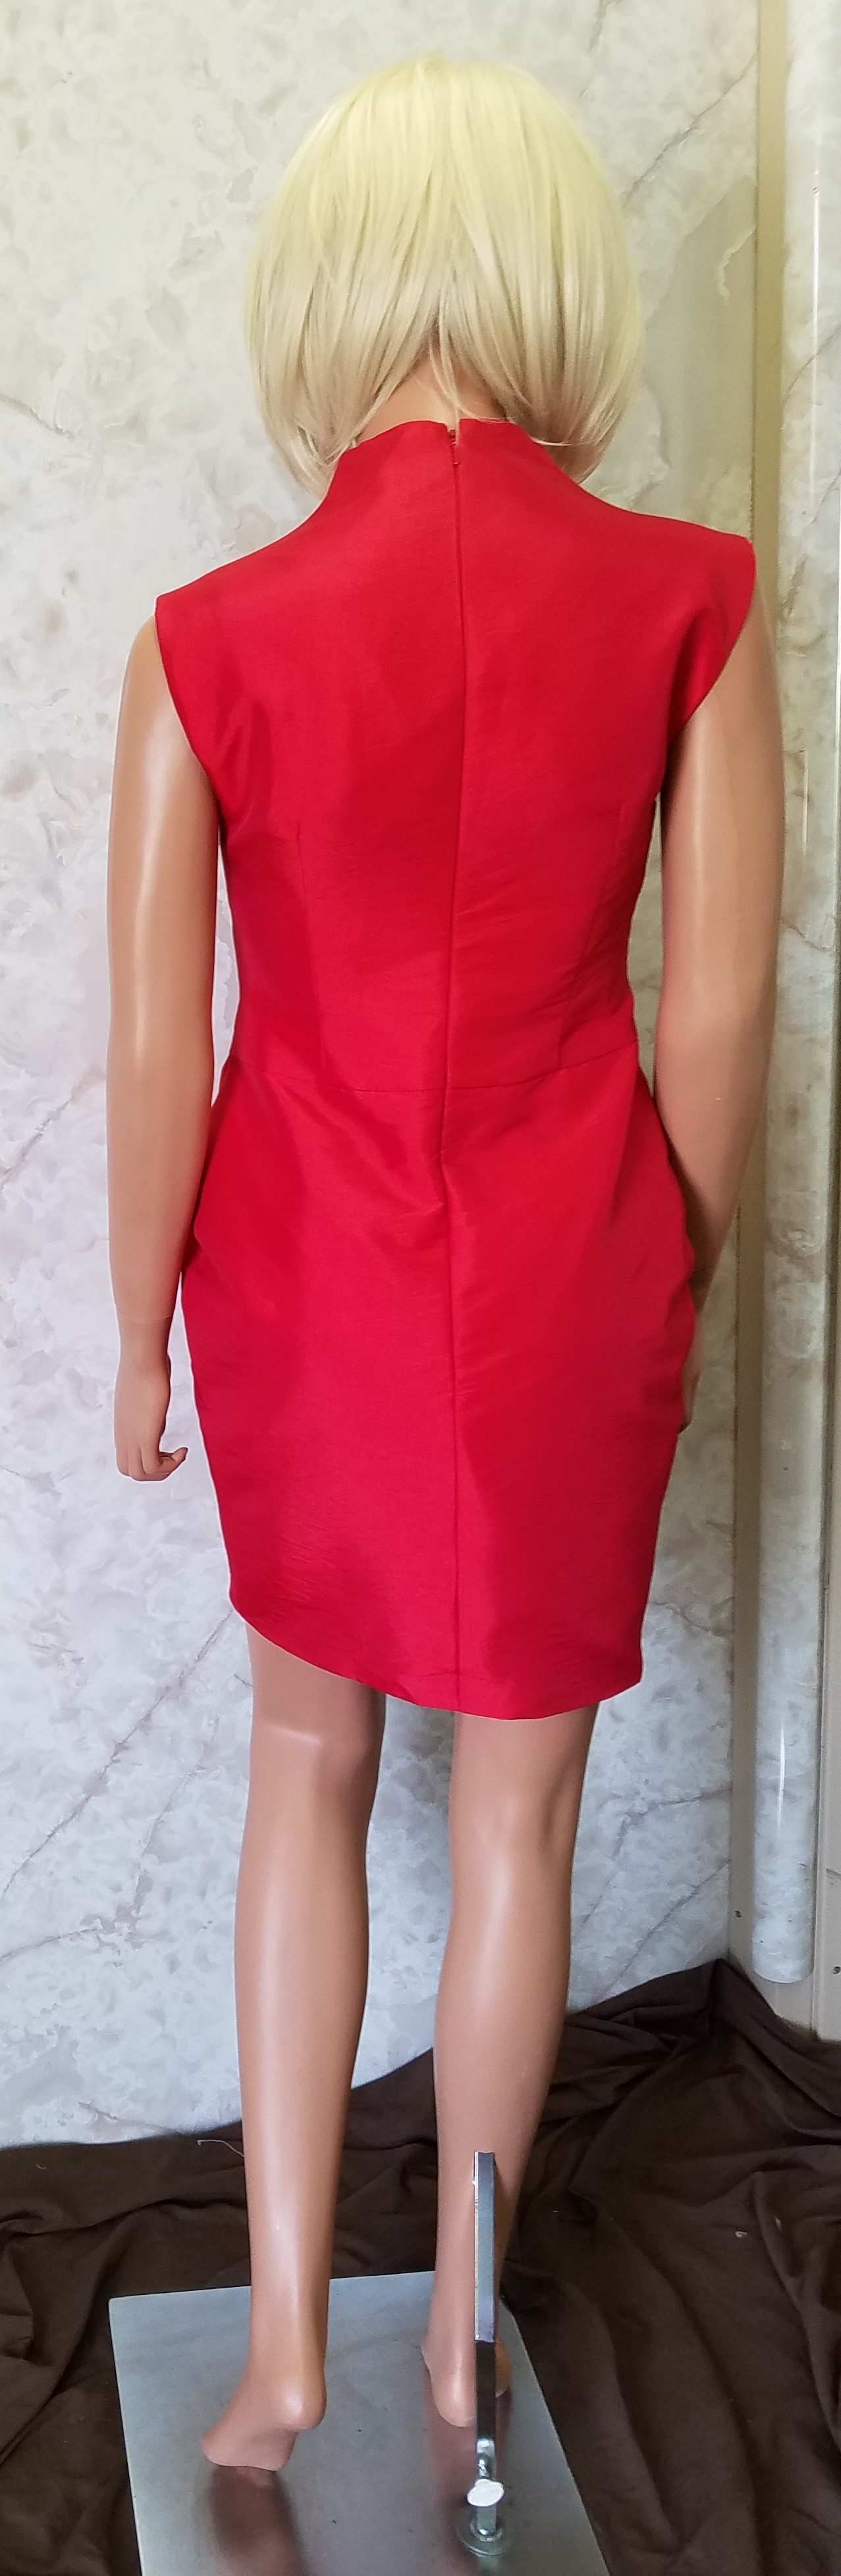 short red business dress